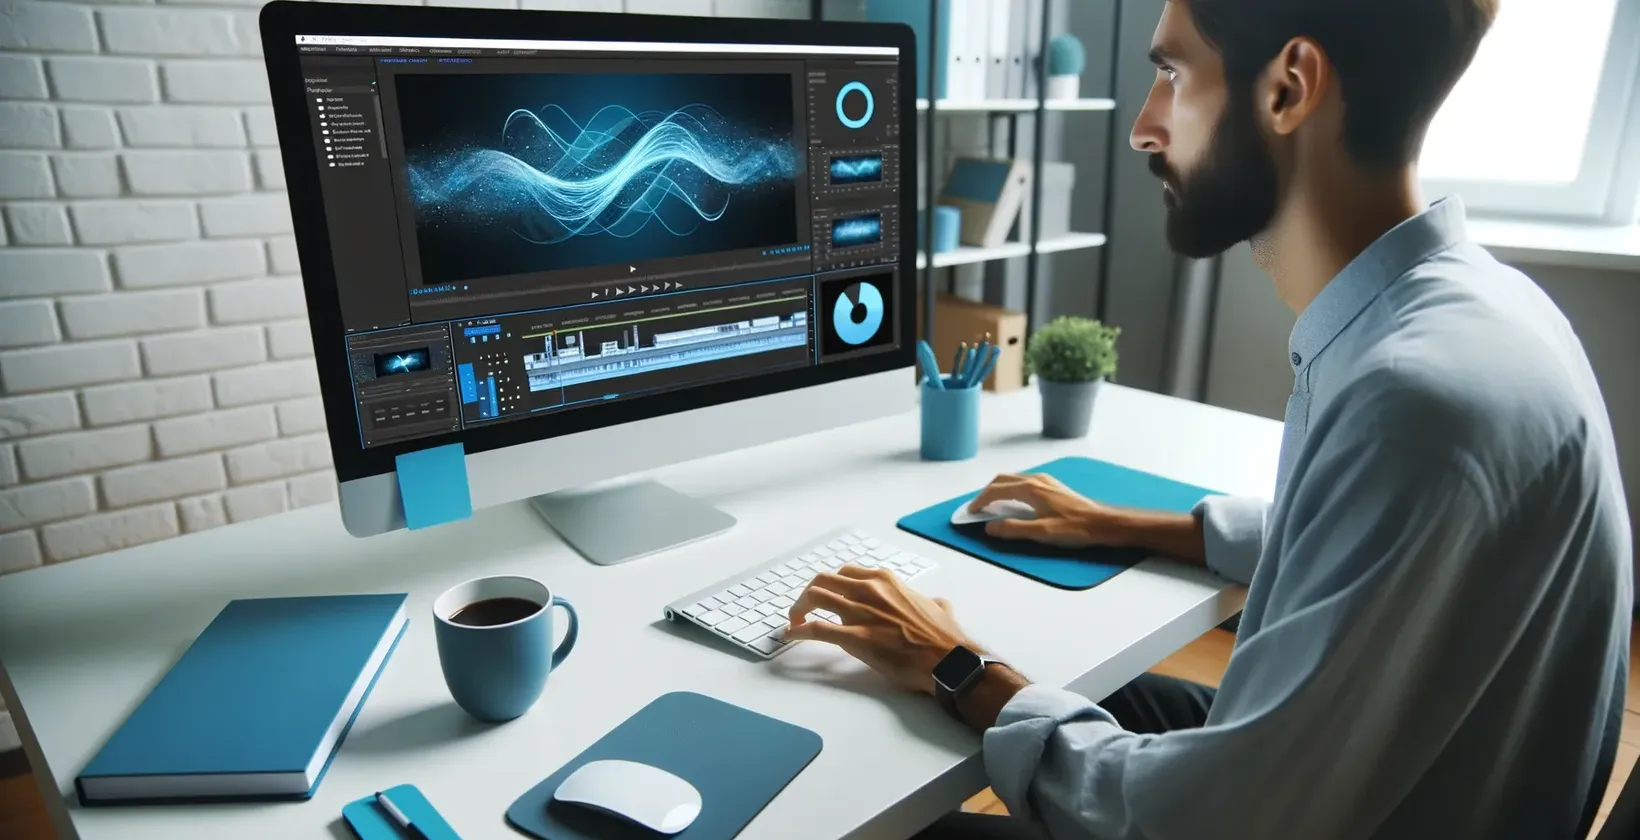 איש מקליד במחשב עם מסך כחול, תוך שימוש בכתוביות iMovie